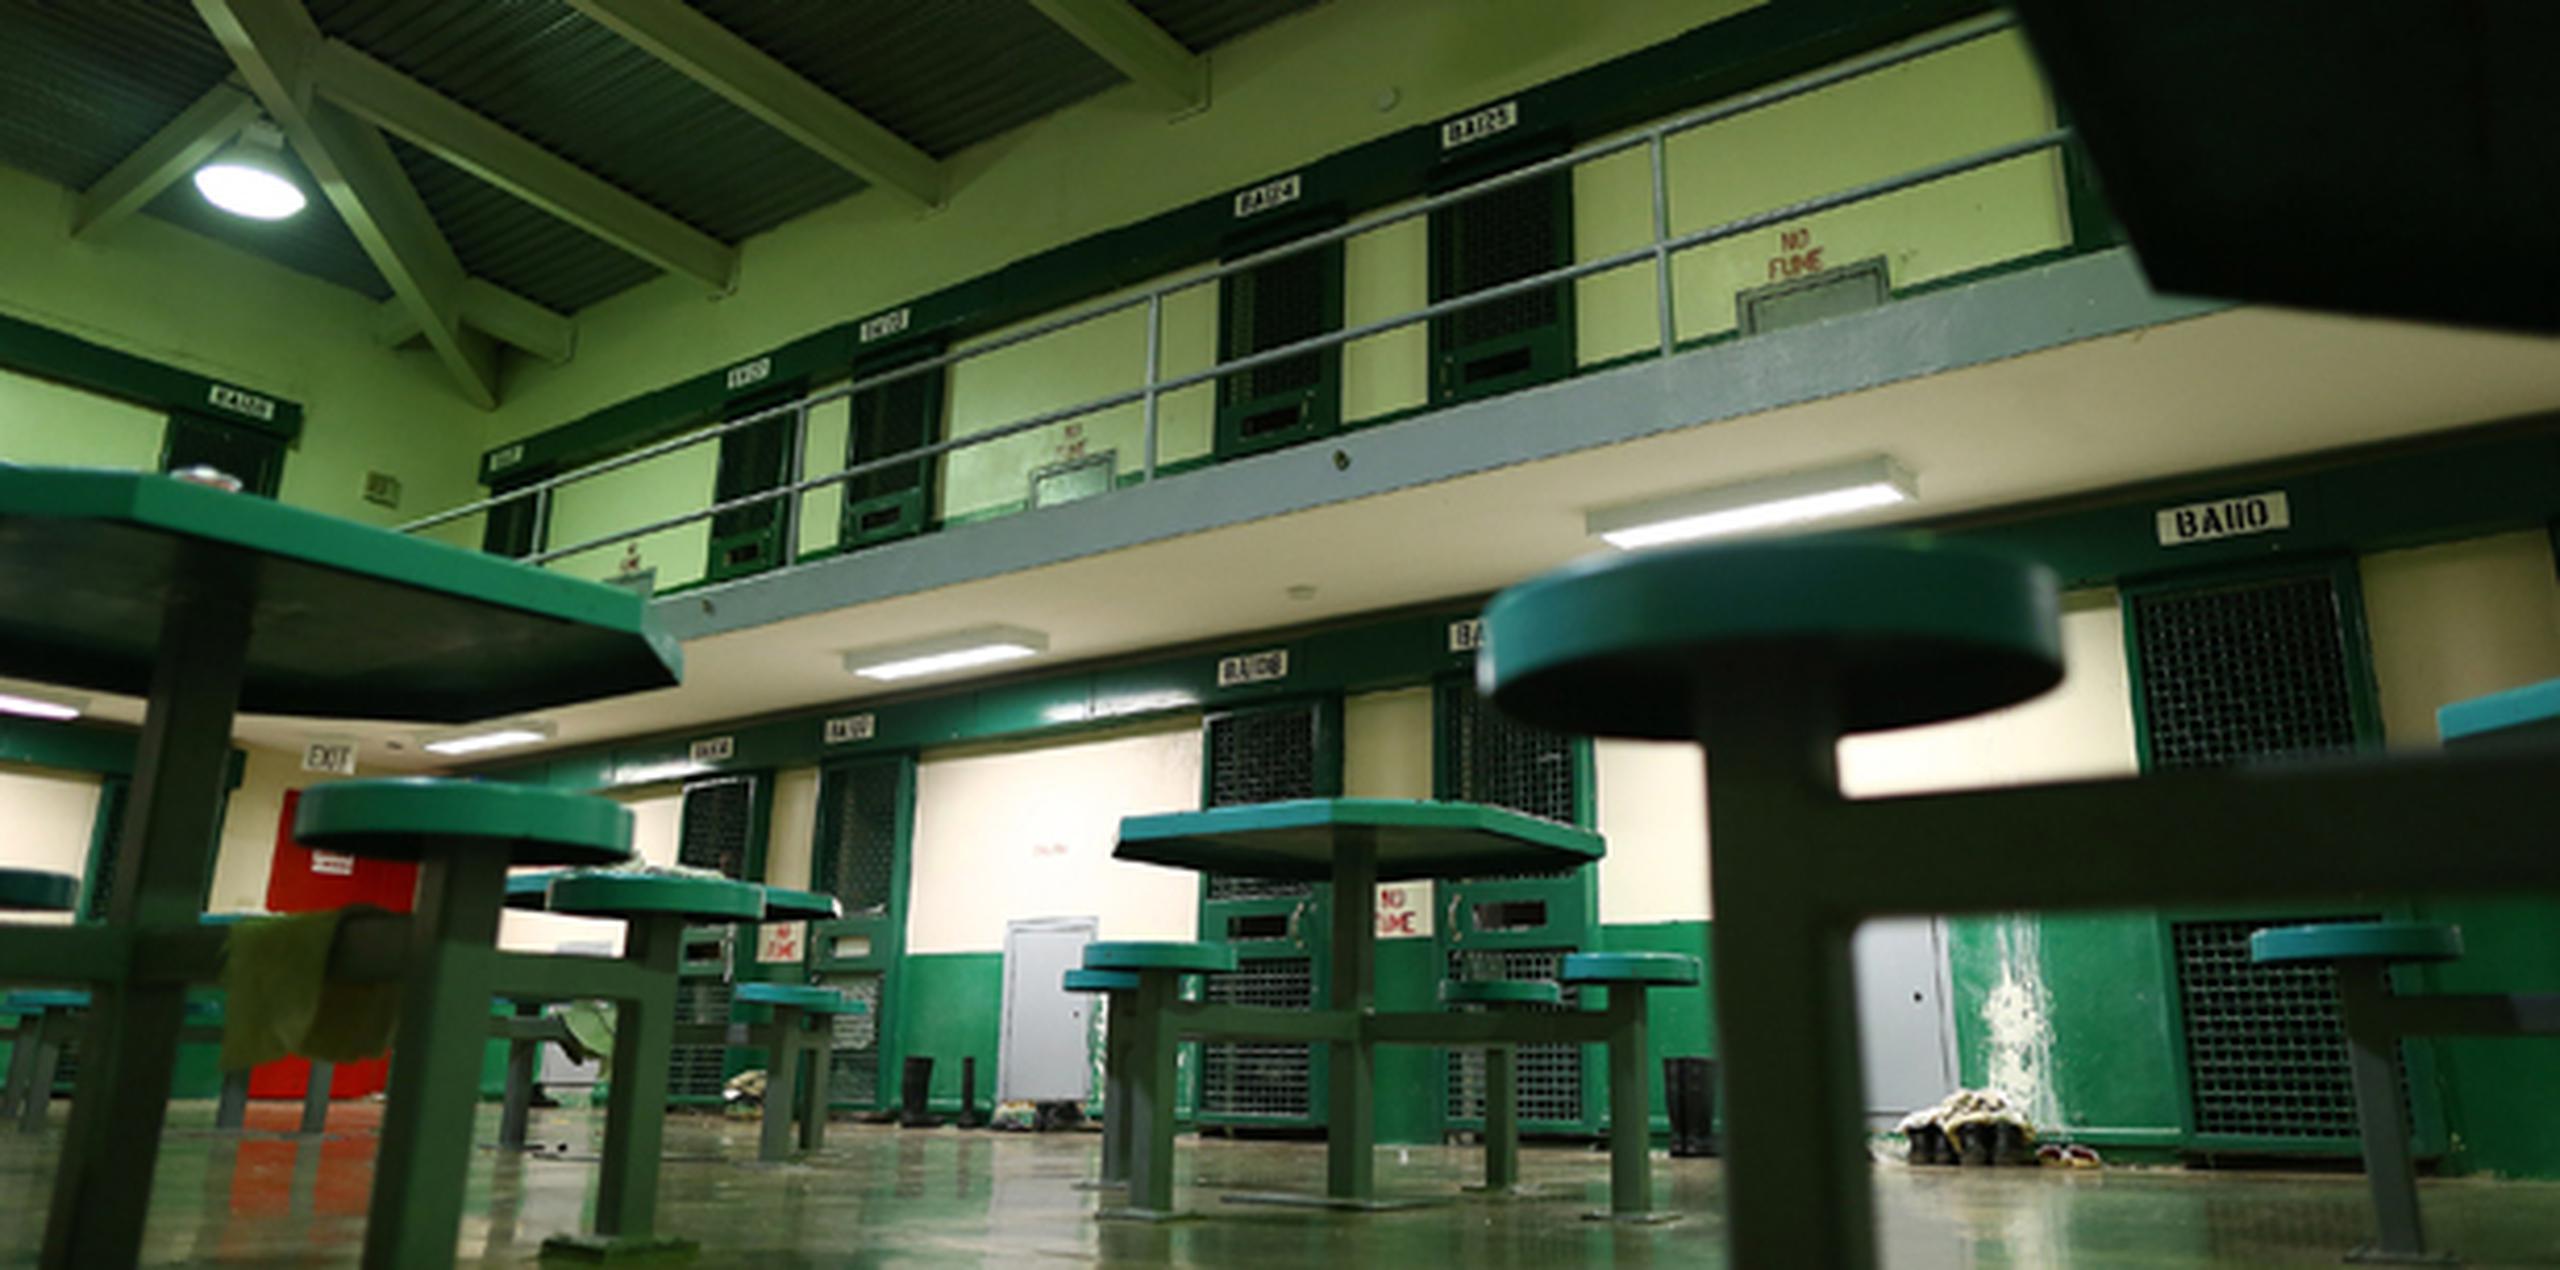 El confinado ingresó en la institución 705 del Complejo Correccional de Bayamón el 8 de mayo, por violación a la Ley Vehicular y fue trasladado el 11, a la cárcel de Sabana Hoyos en Arecibo. (Archivo)